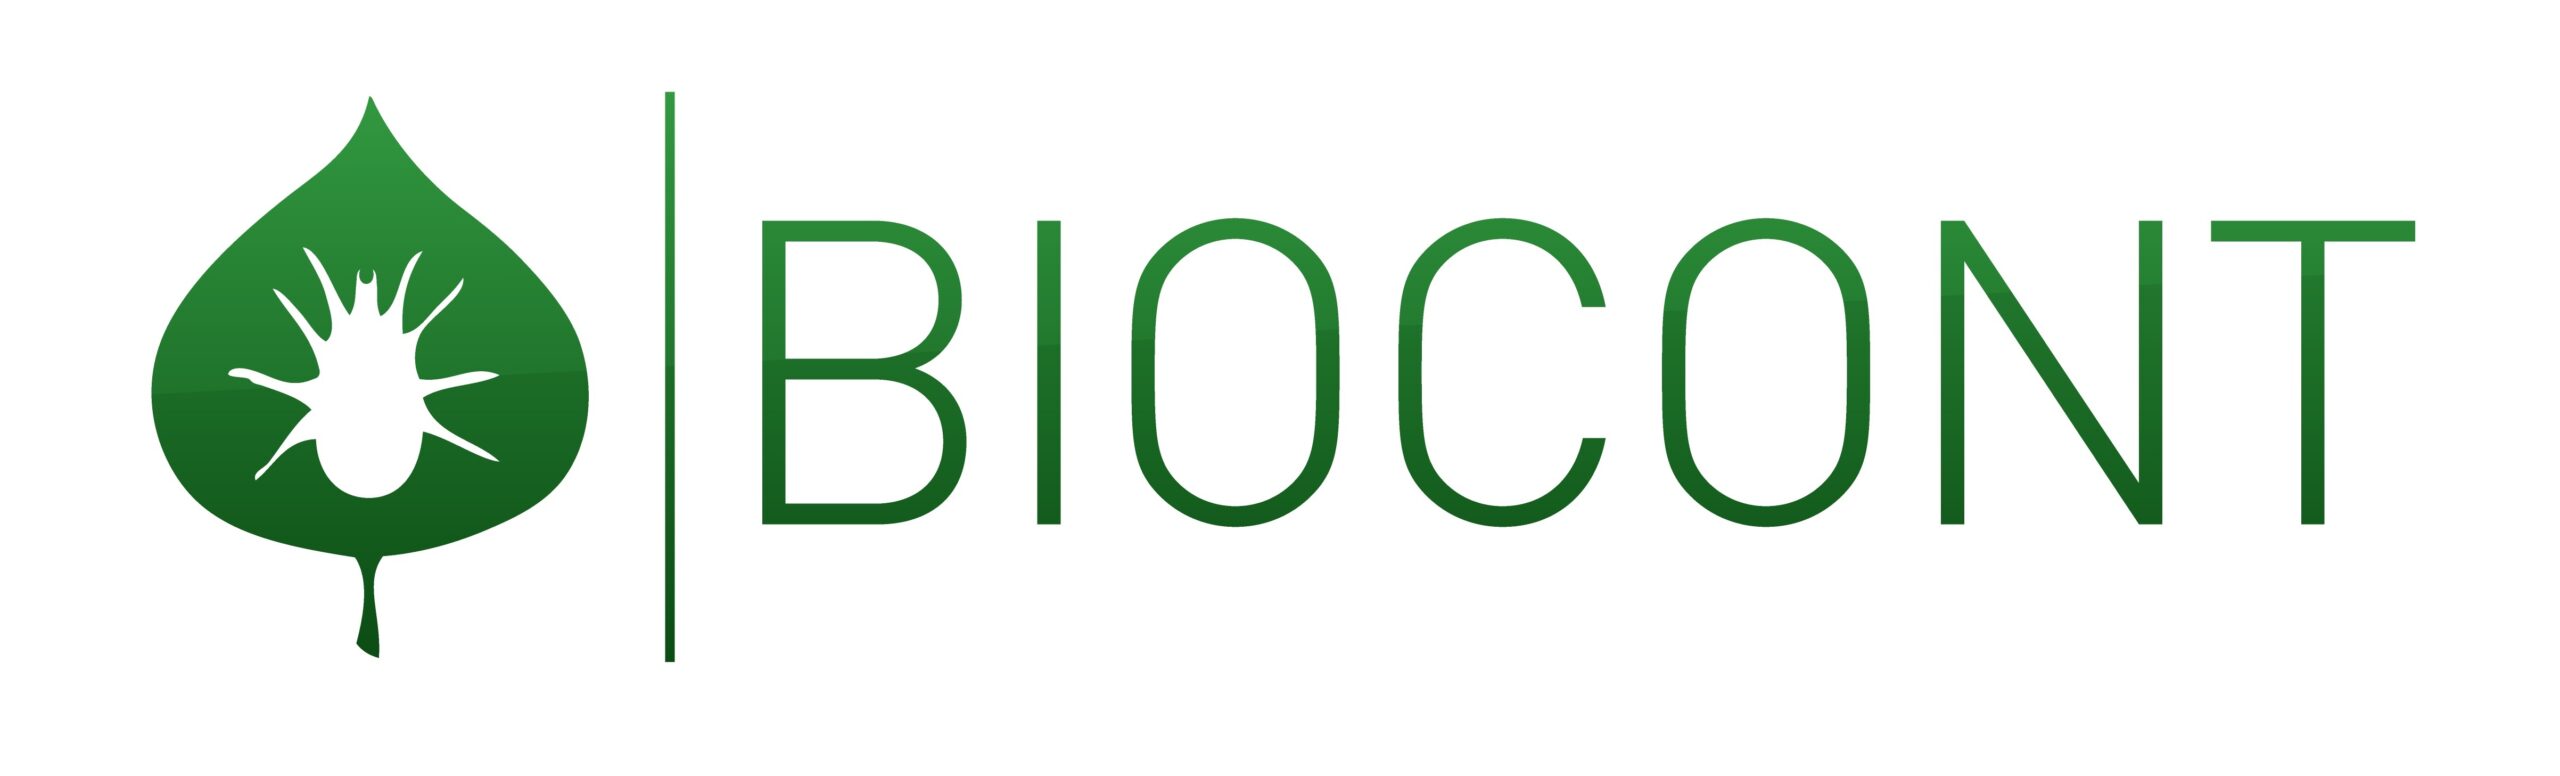 Biocont